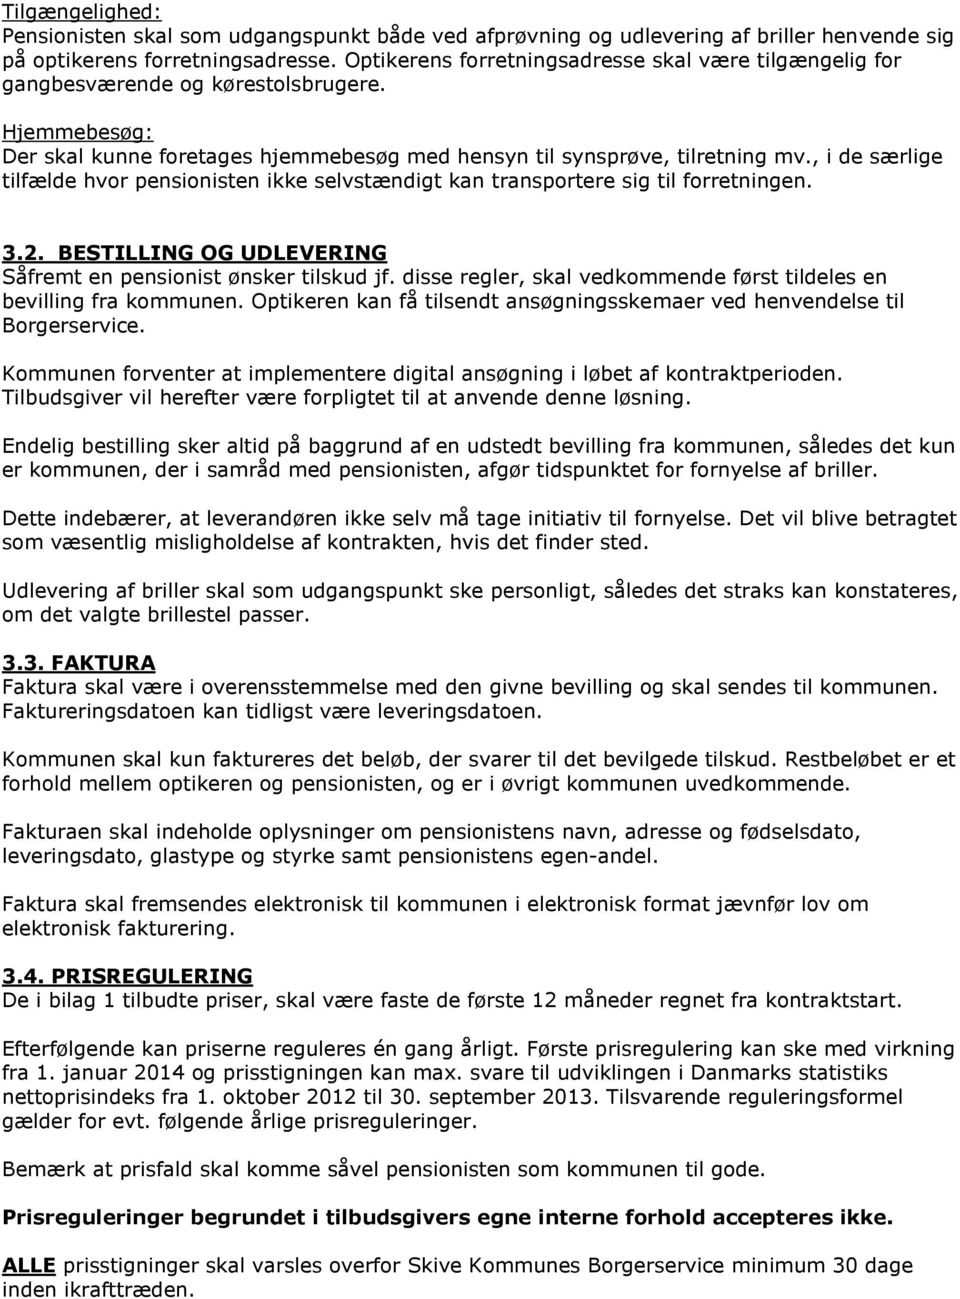 Udbud af. Prisaftale om helbredstillæg på briller. i henhold til lov om  social pension. Skive Kommune - PDF Gratis download